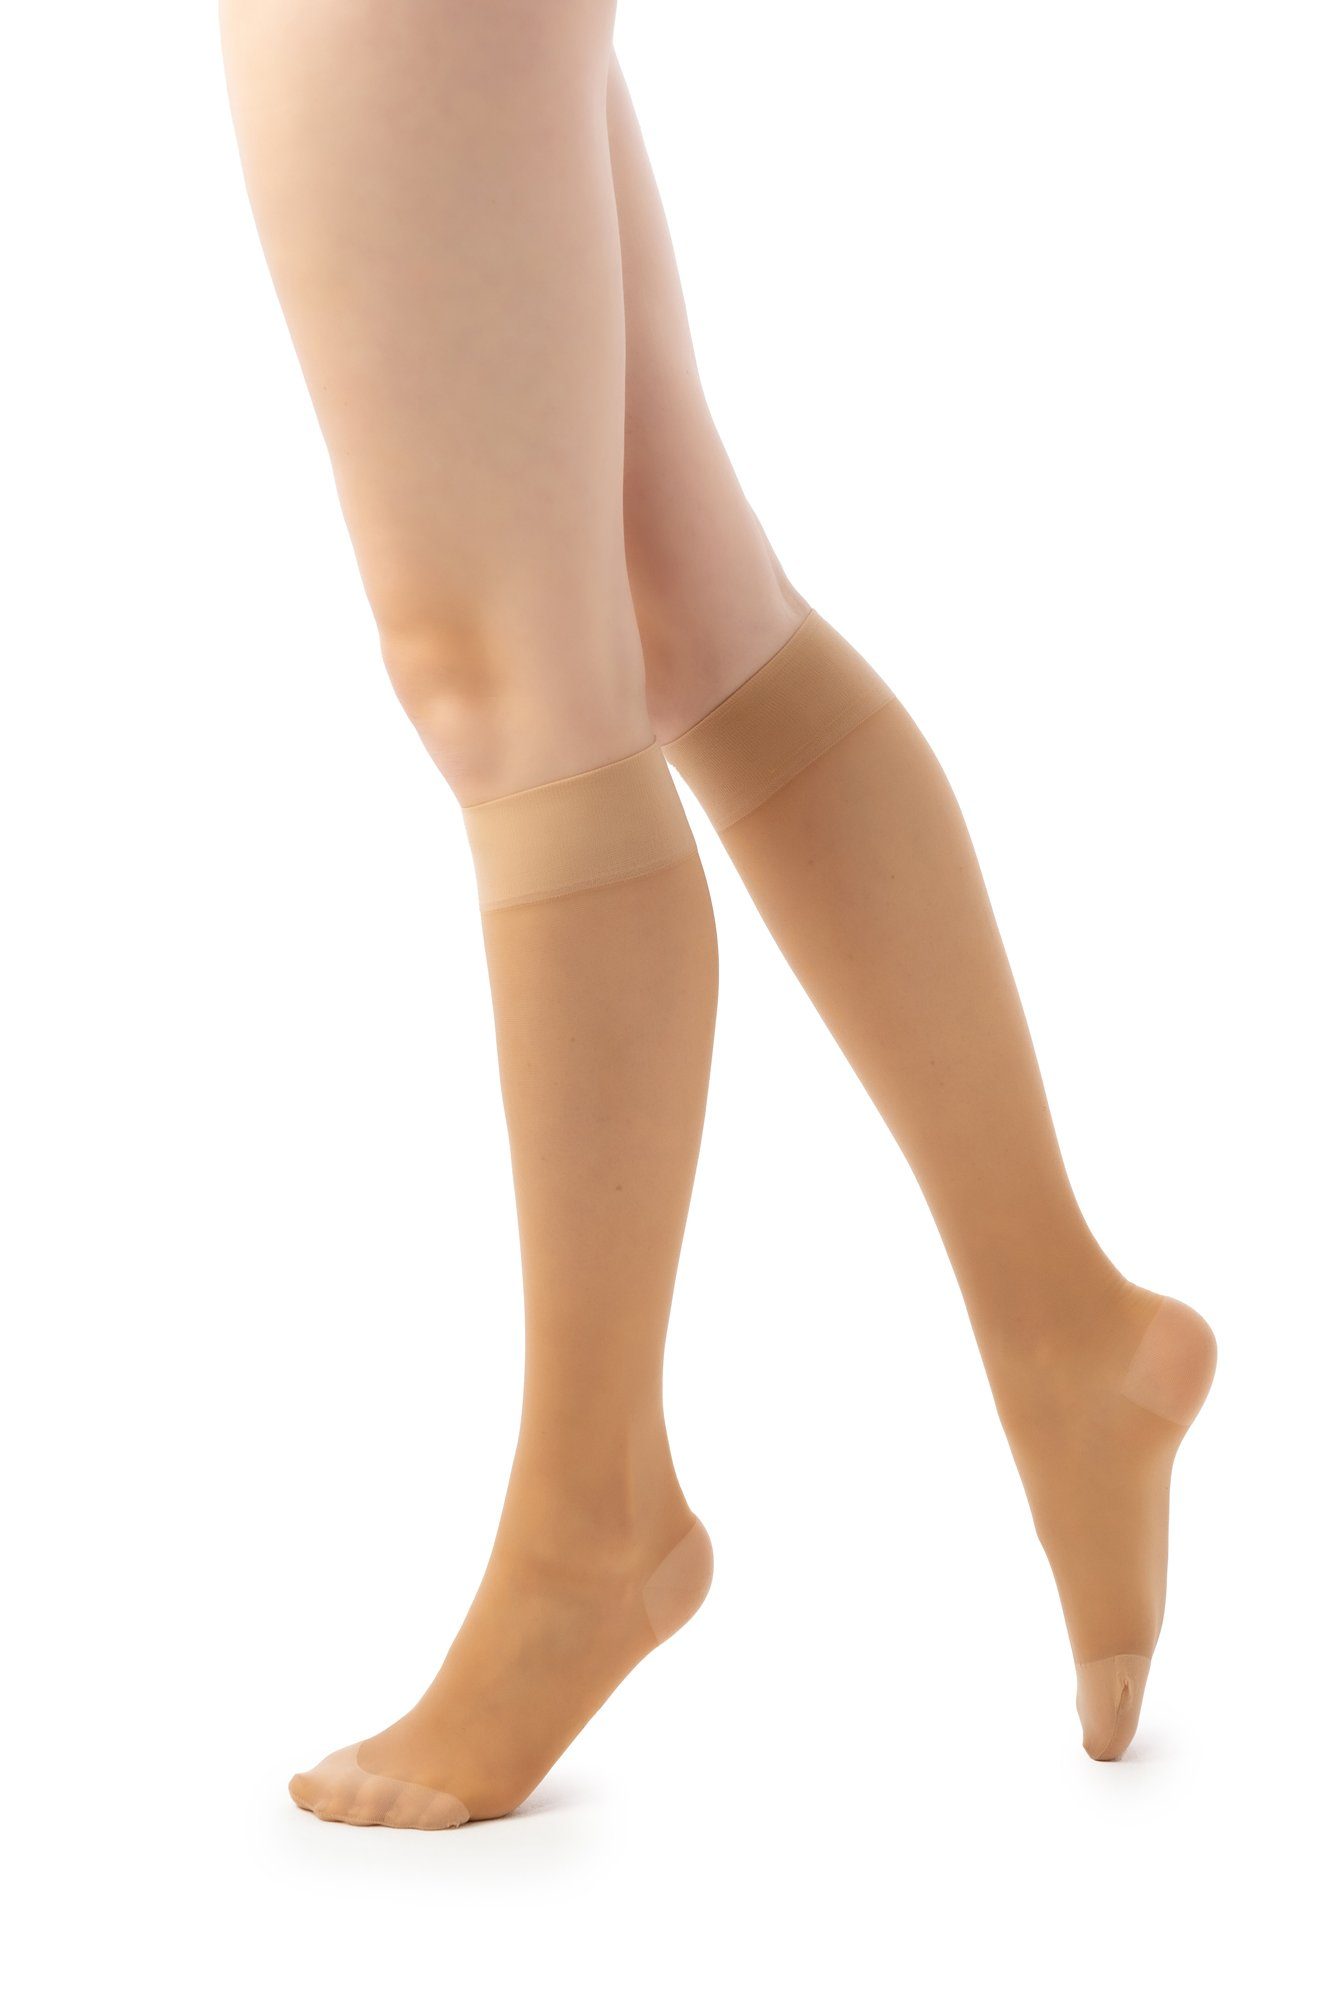 disée Damen mit 70 Socken puder Support starker Kompression Kniestrümpfe Knee 4049141042_2 disée Stützkniestrumpf High DEN